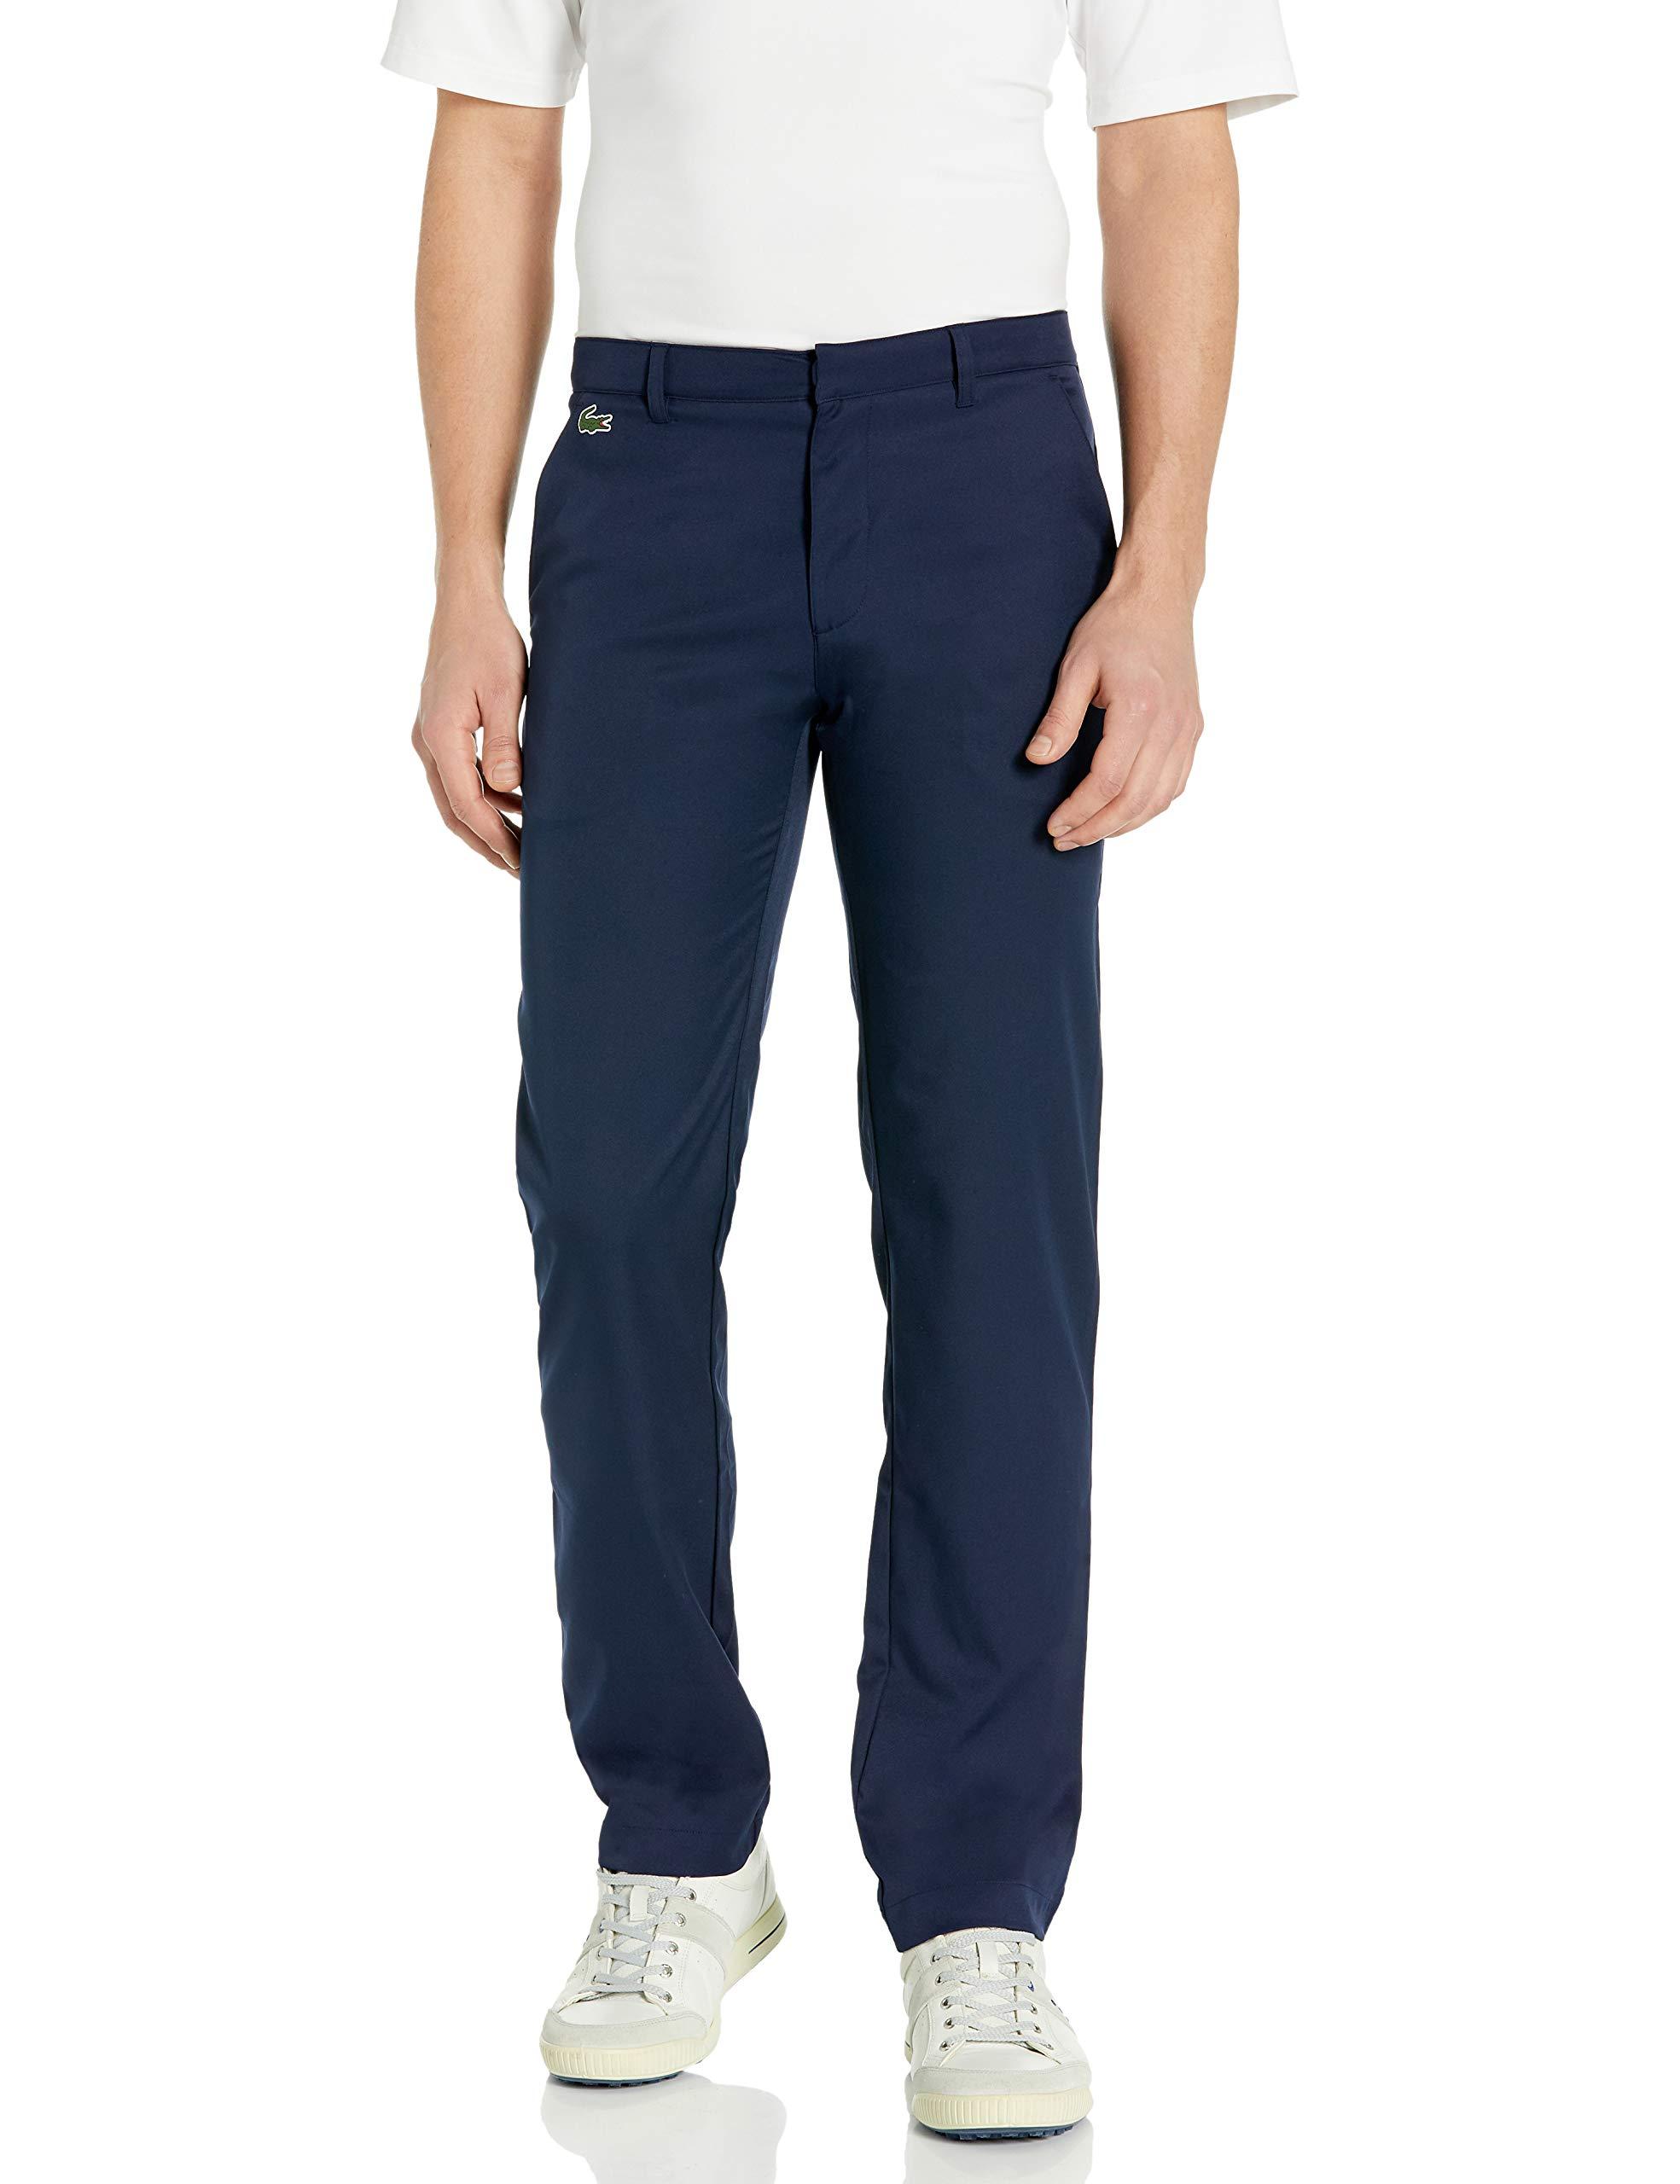 Lacoste Sport Gabardine Golf Pants in Navy Blue (Blue) for Men - Lyst